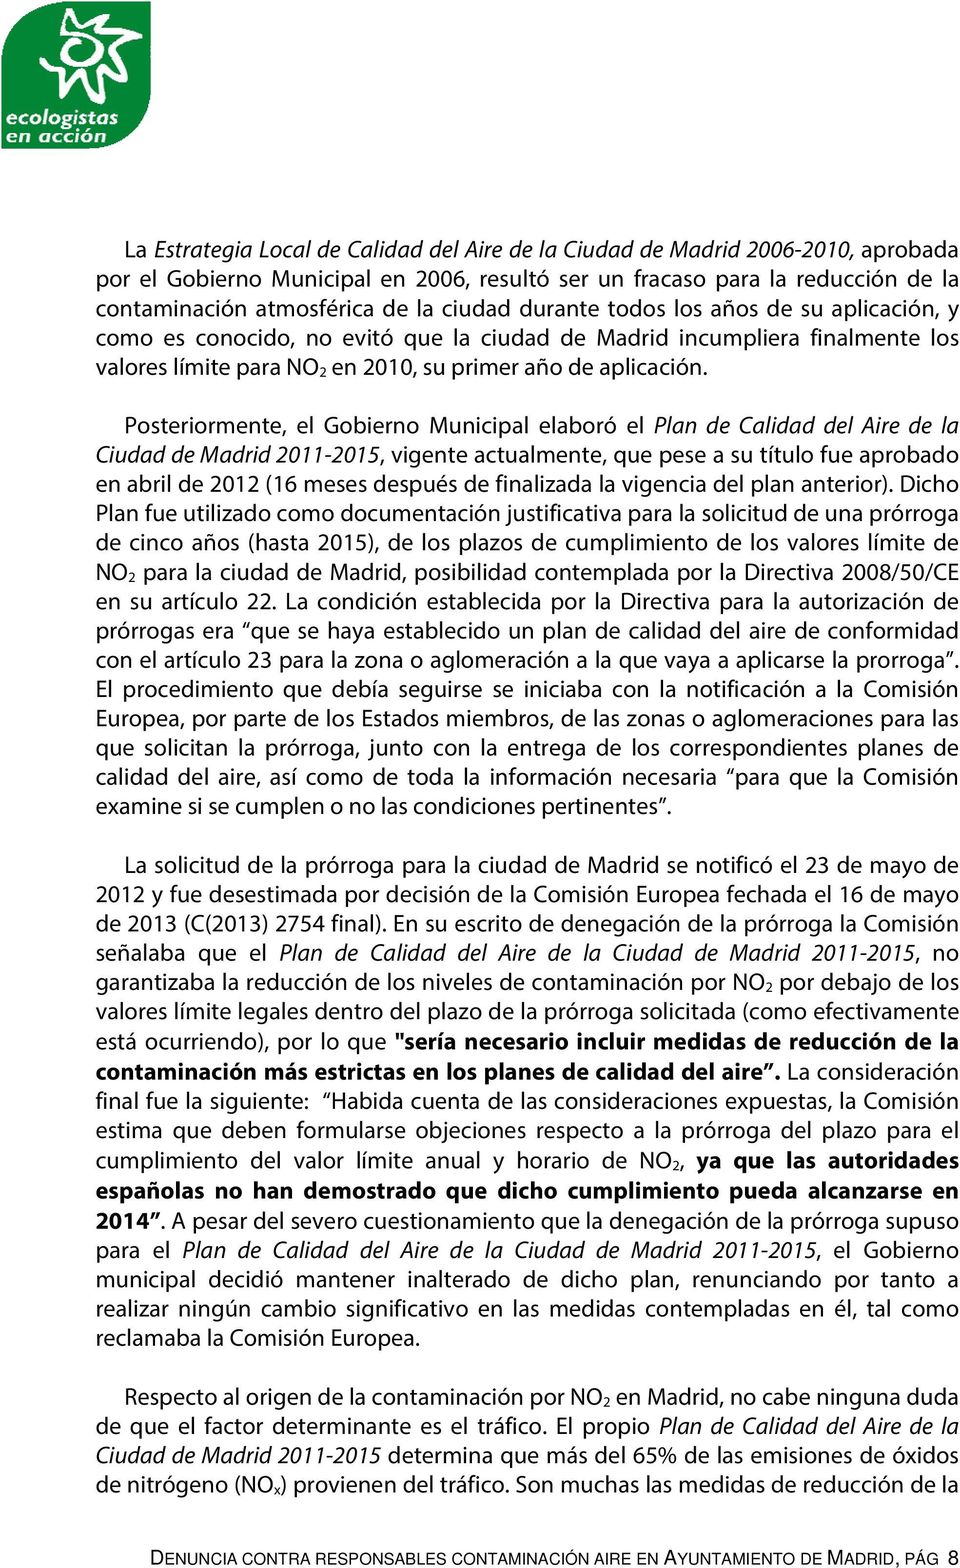 Posteriormente, el Gobierno Municipal elaboró el Plan de Calidad del Aire de la Ciudad de Madrid 2011-2015, vigente actualmente, que pese a su título fue aprobado en abril de 2012 (16 meses después